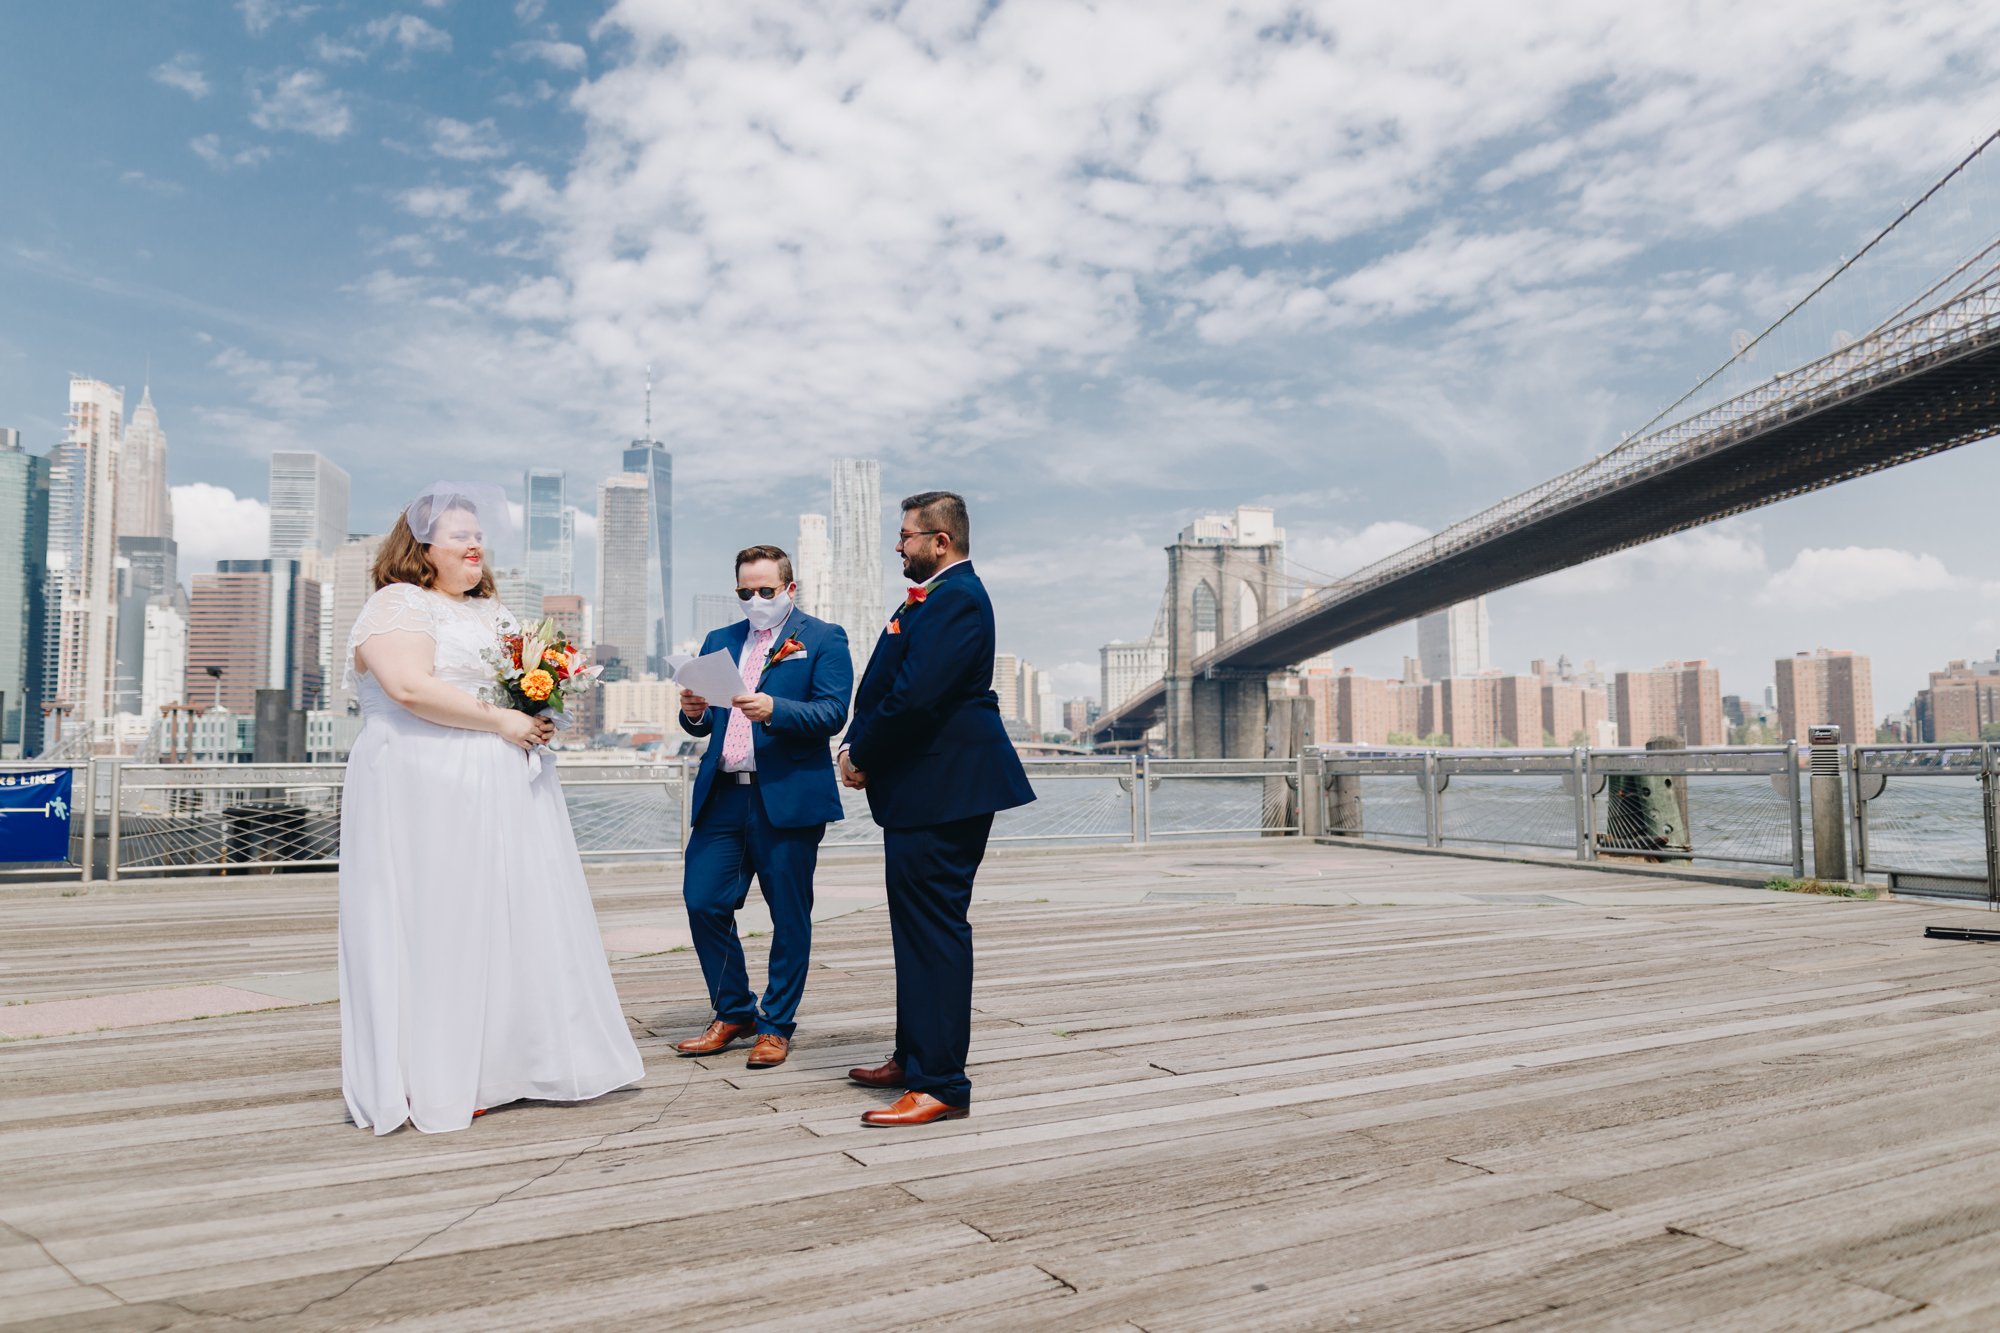 Ferry Dock wedding photos at Brooklyn Bridge Park